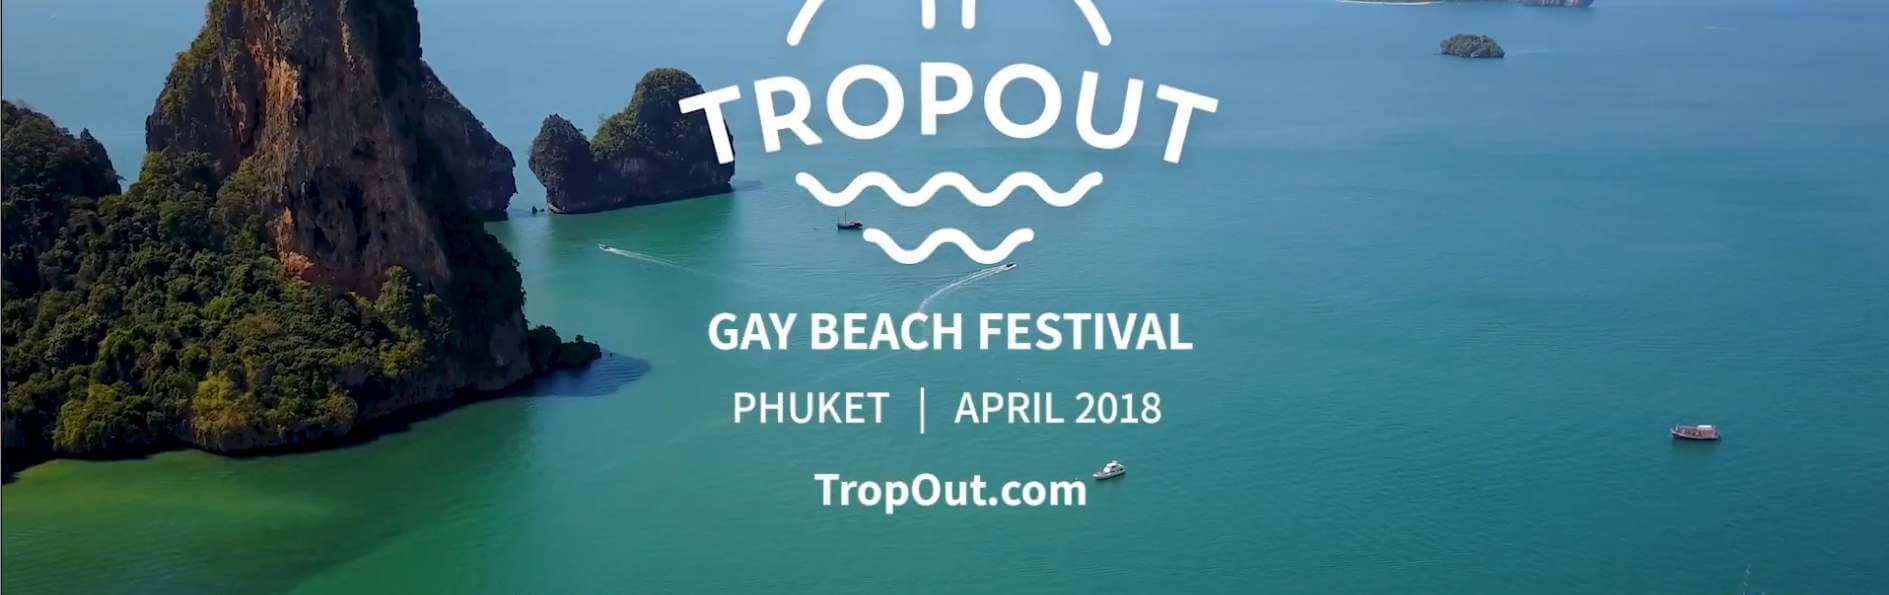 TropOut Phuket 2018